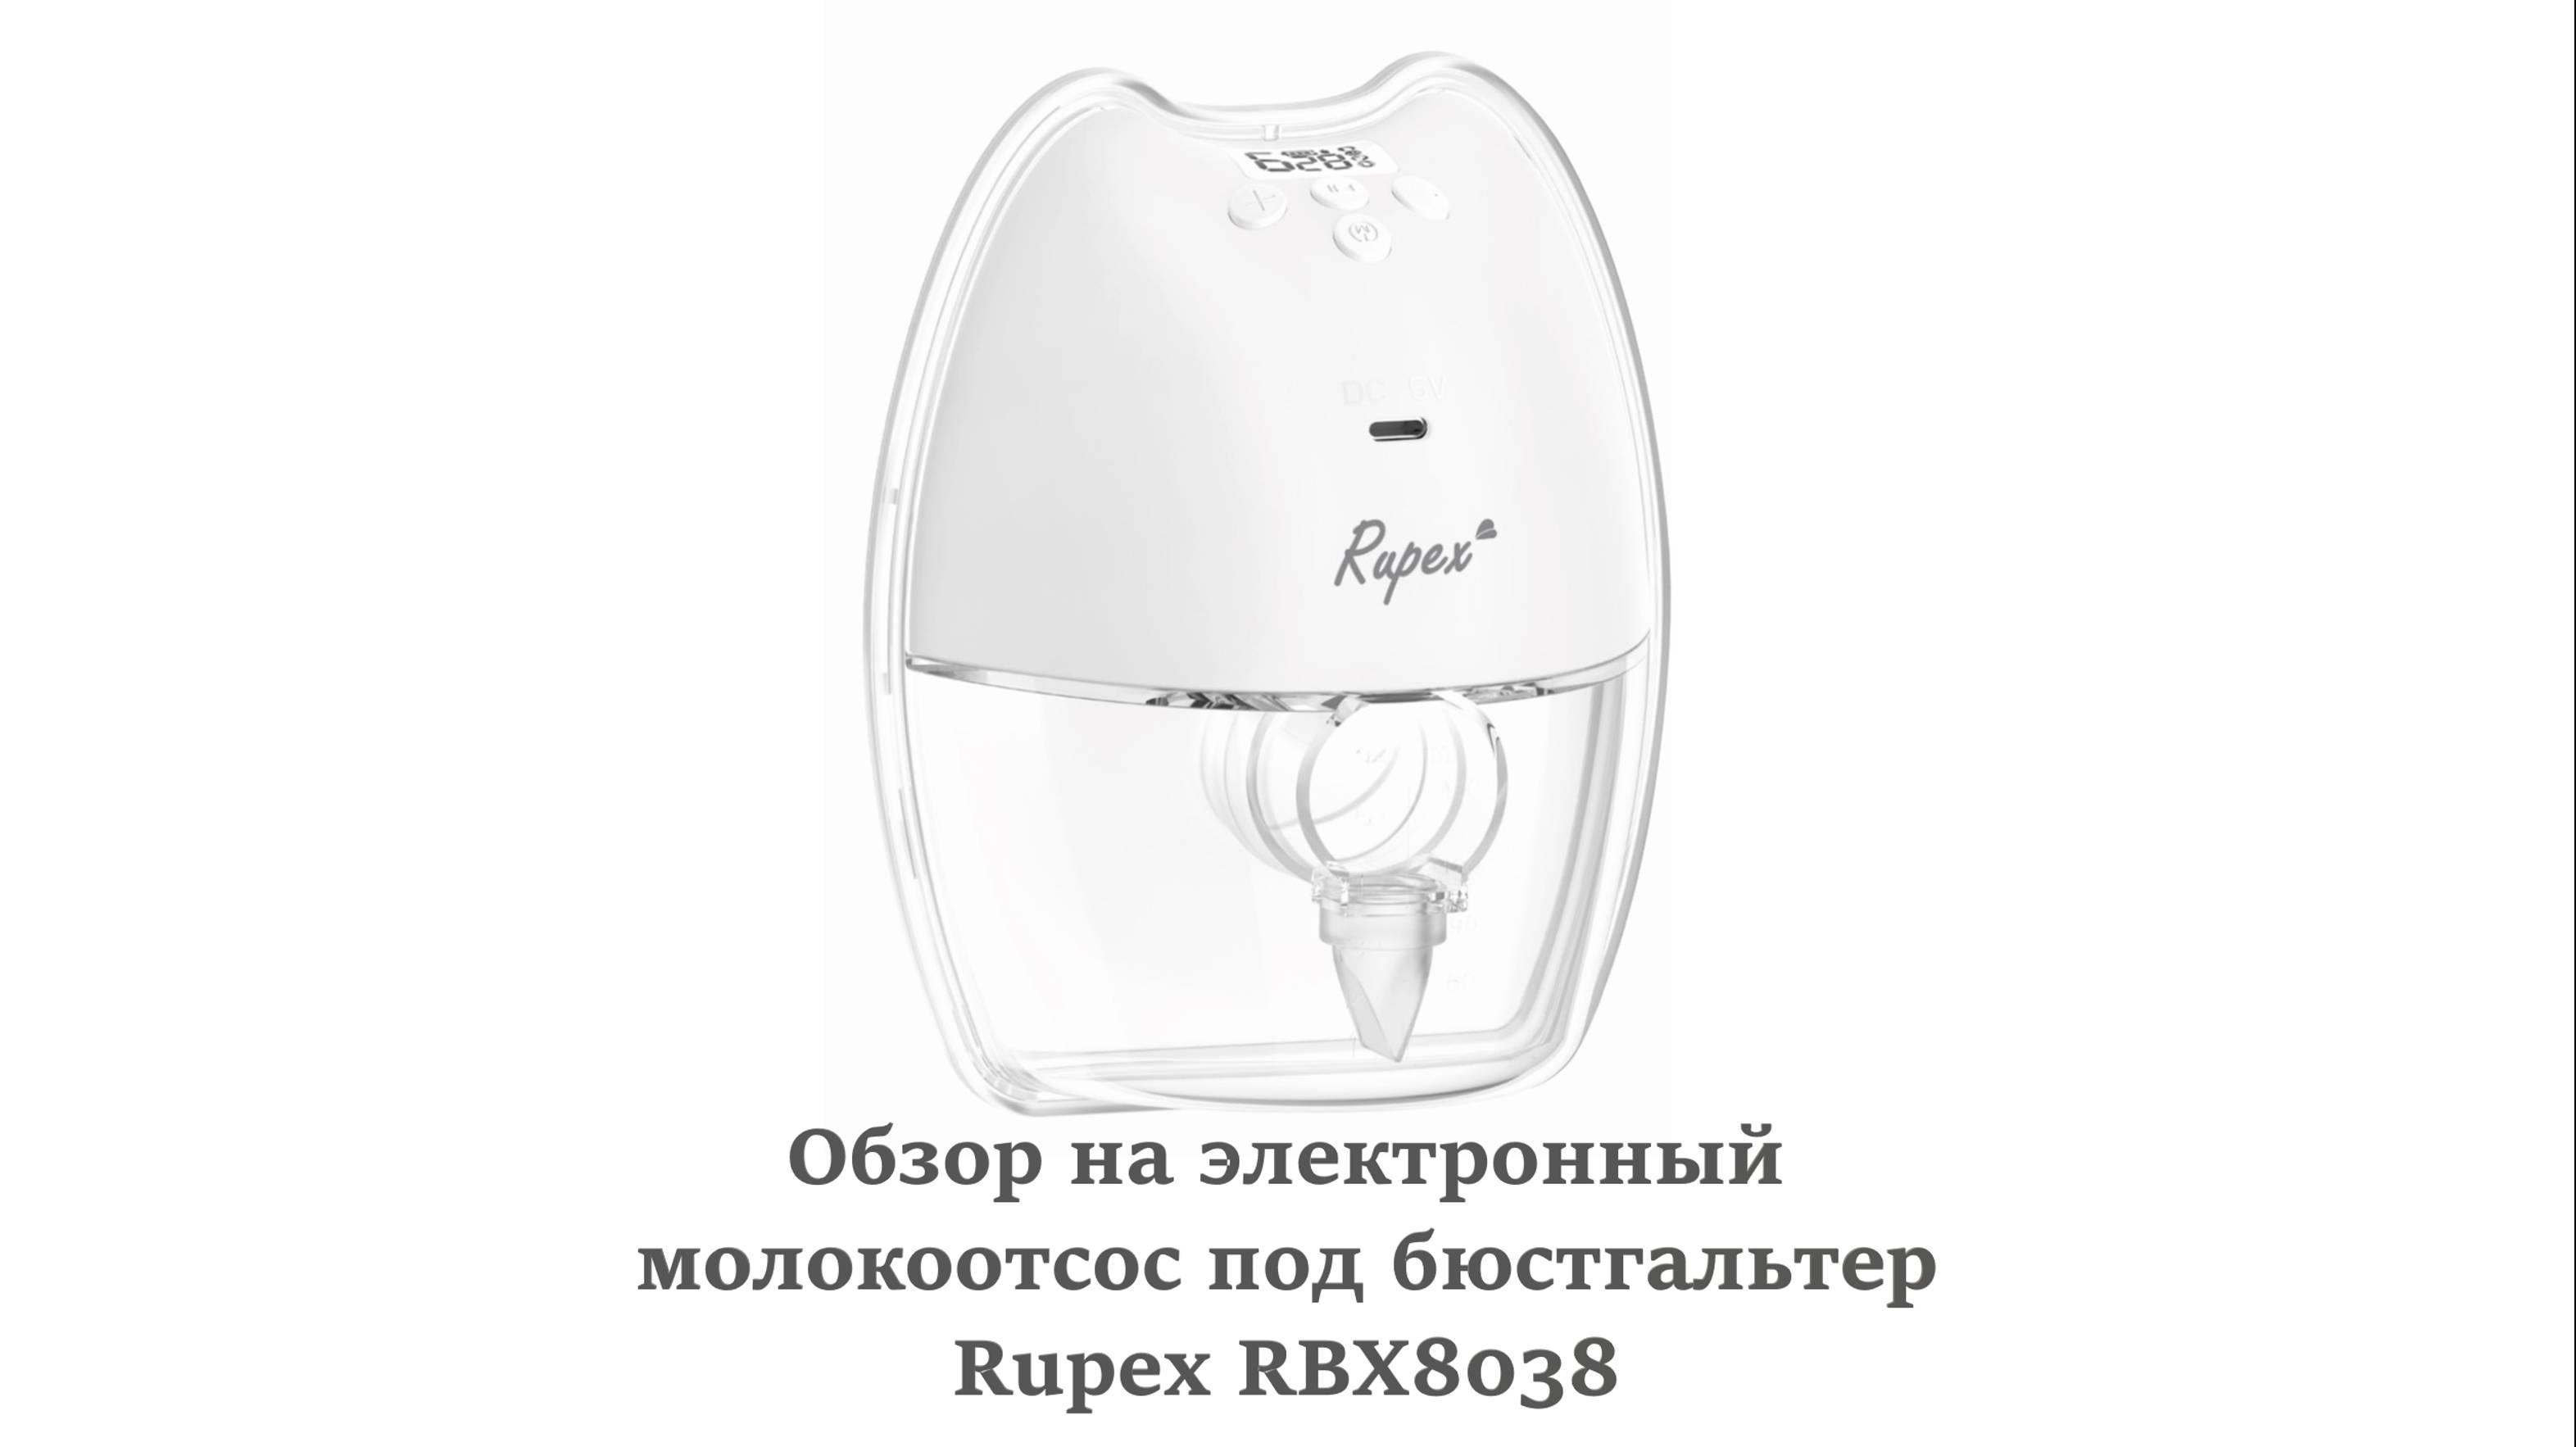 Обзор на электронный молокоотсос под бюстгальтер Rupex RBX8038